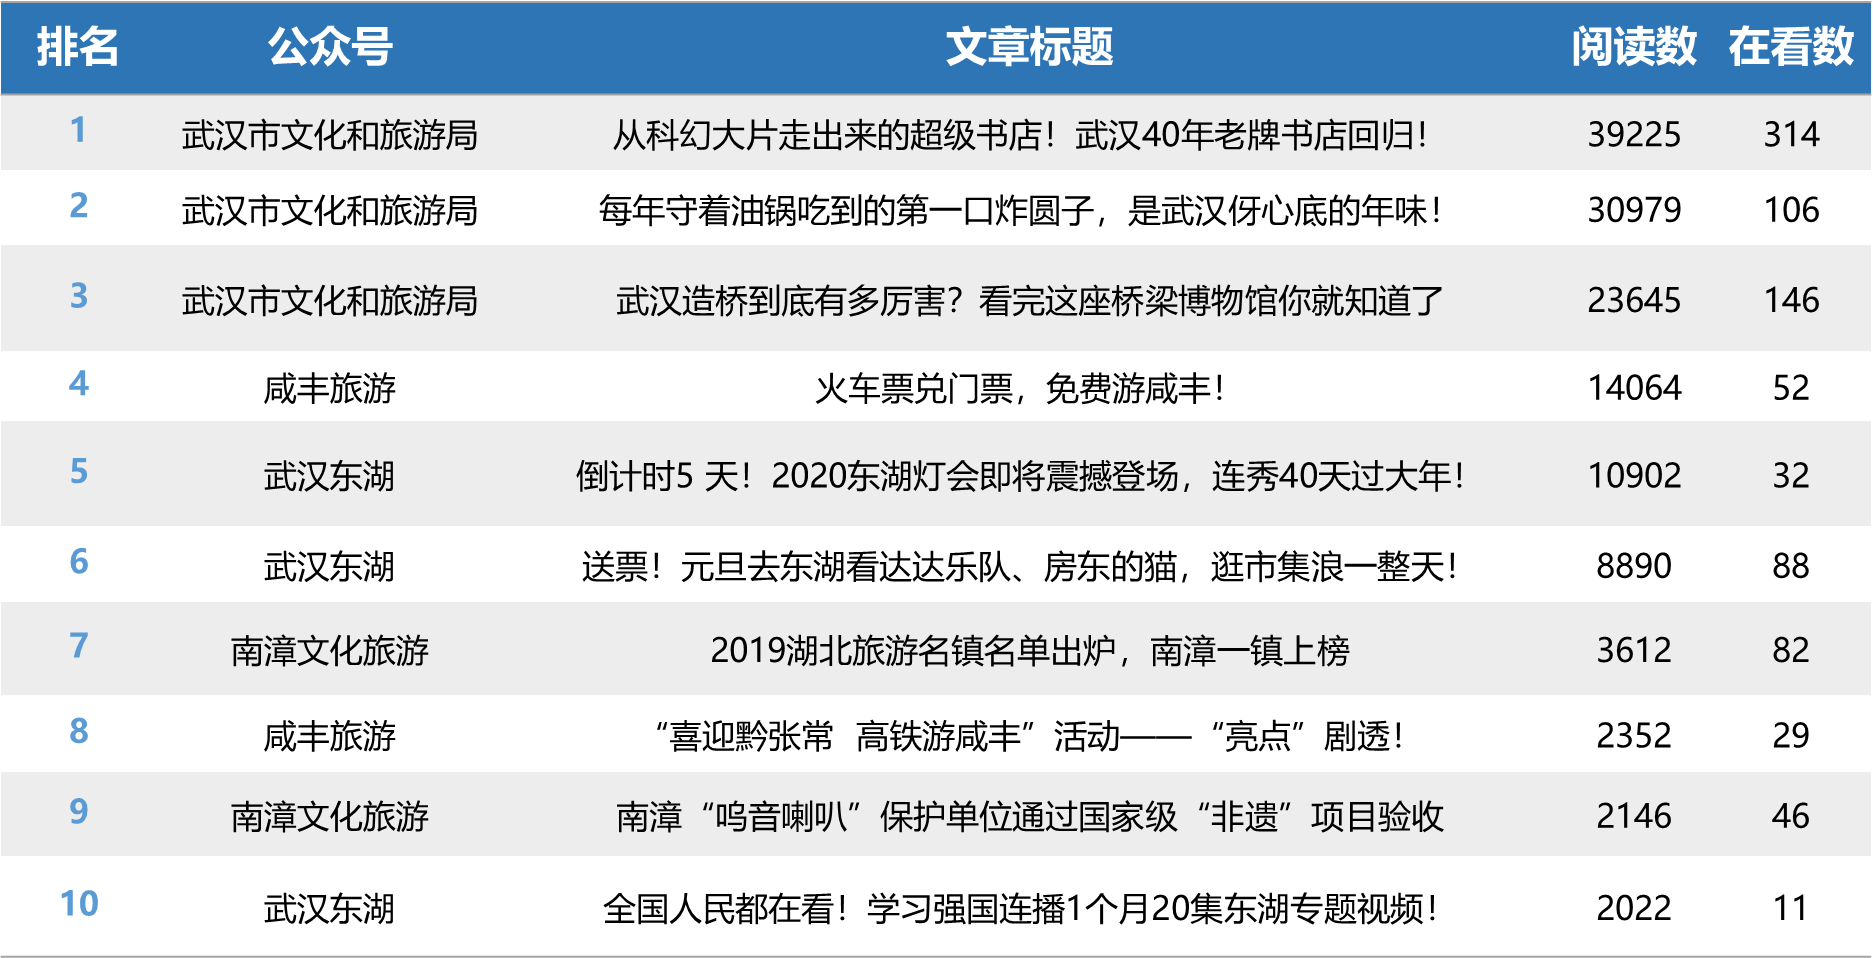 湖北旅游行业微信排行榜第4期：“咸丰旅游”首入榜单